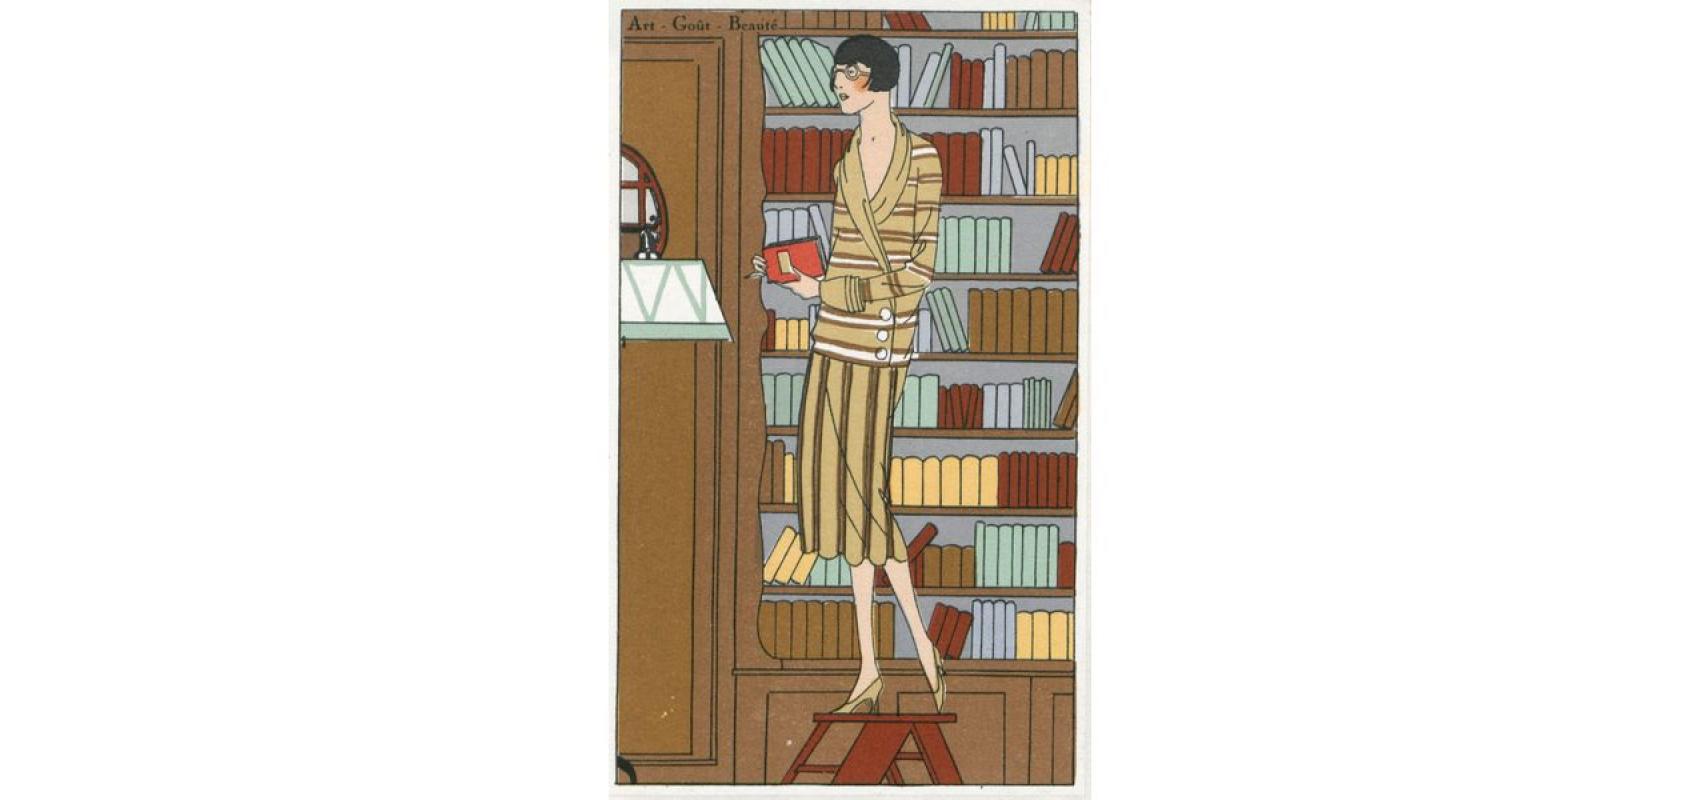 Extrait d'Art, goût, beauté : feuillets de l'élégance féminine - Avril 1925 - BnF, département Droit, économie, politique